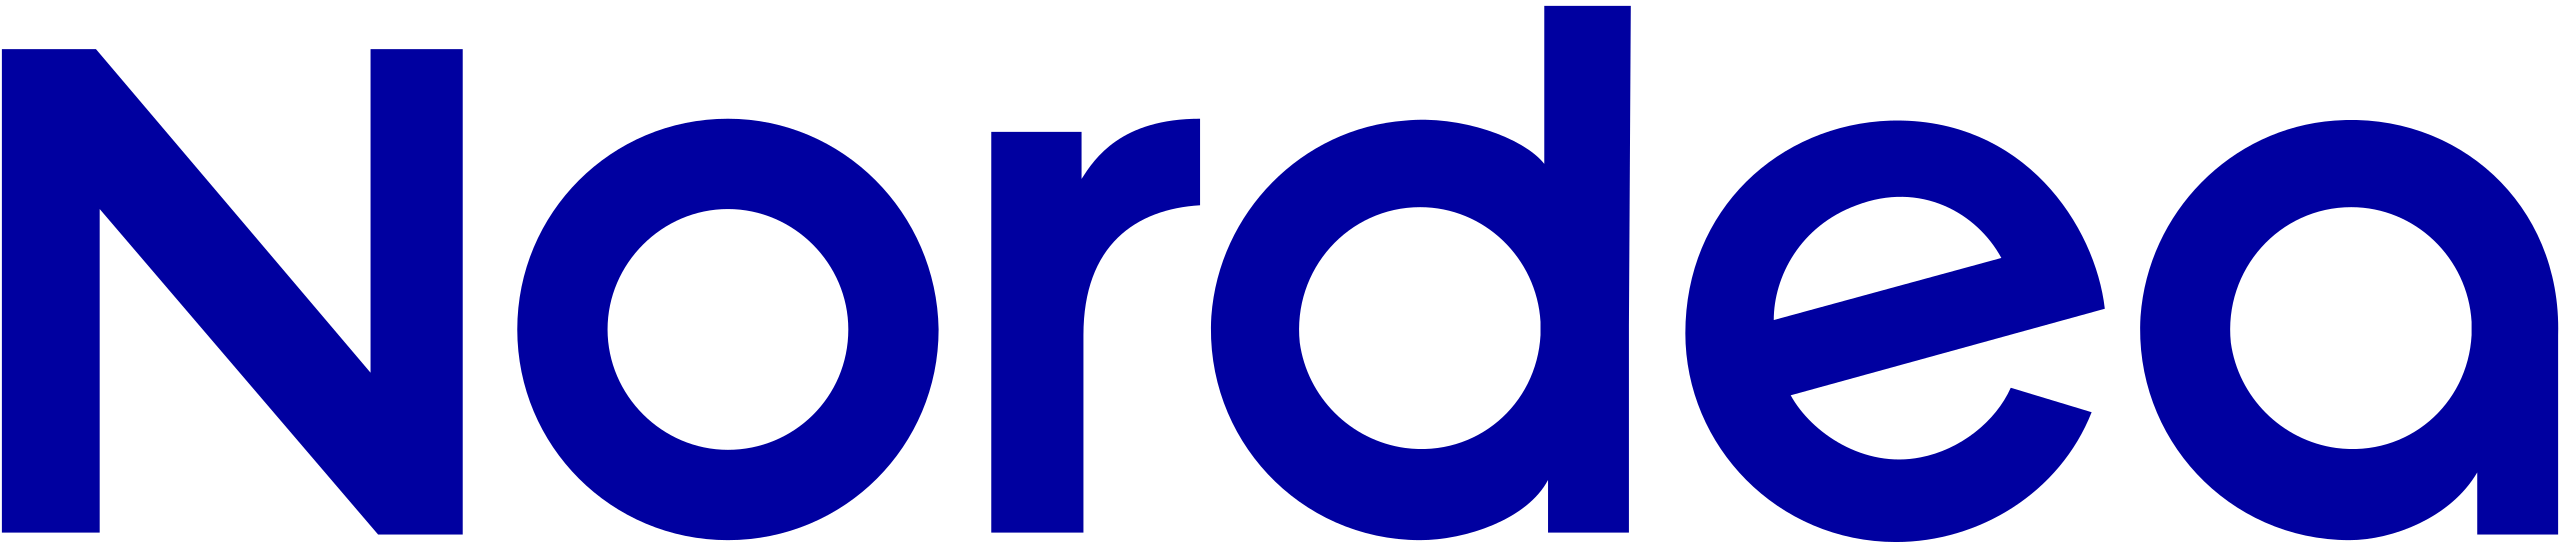 nordea logo